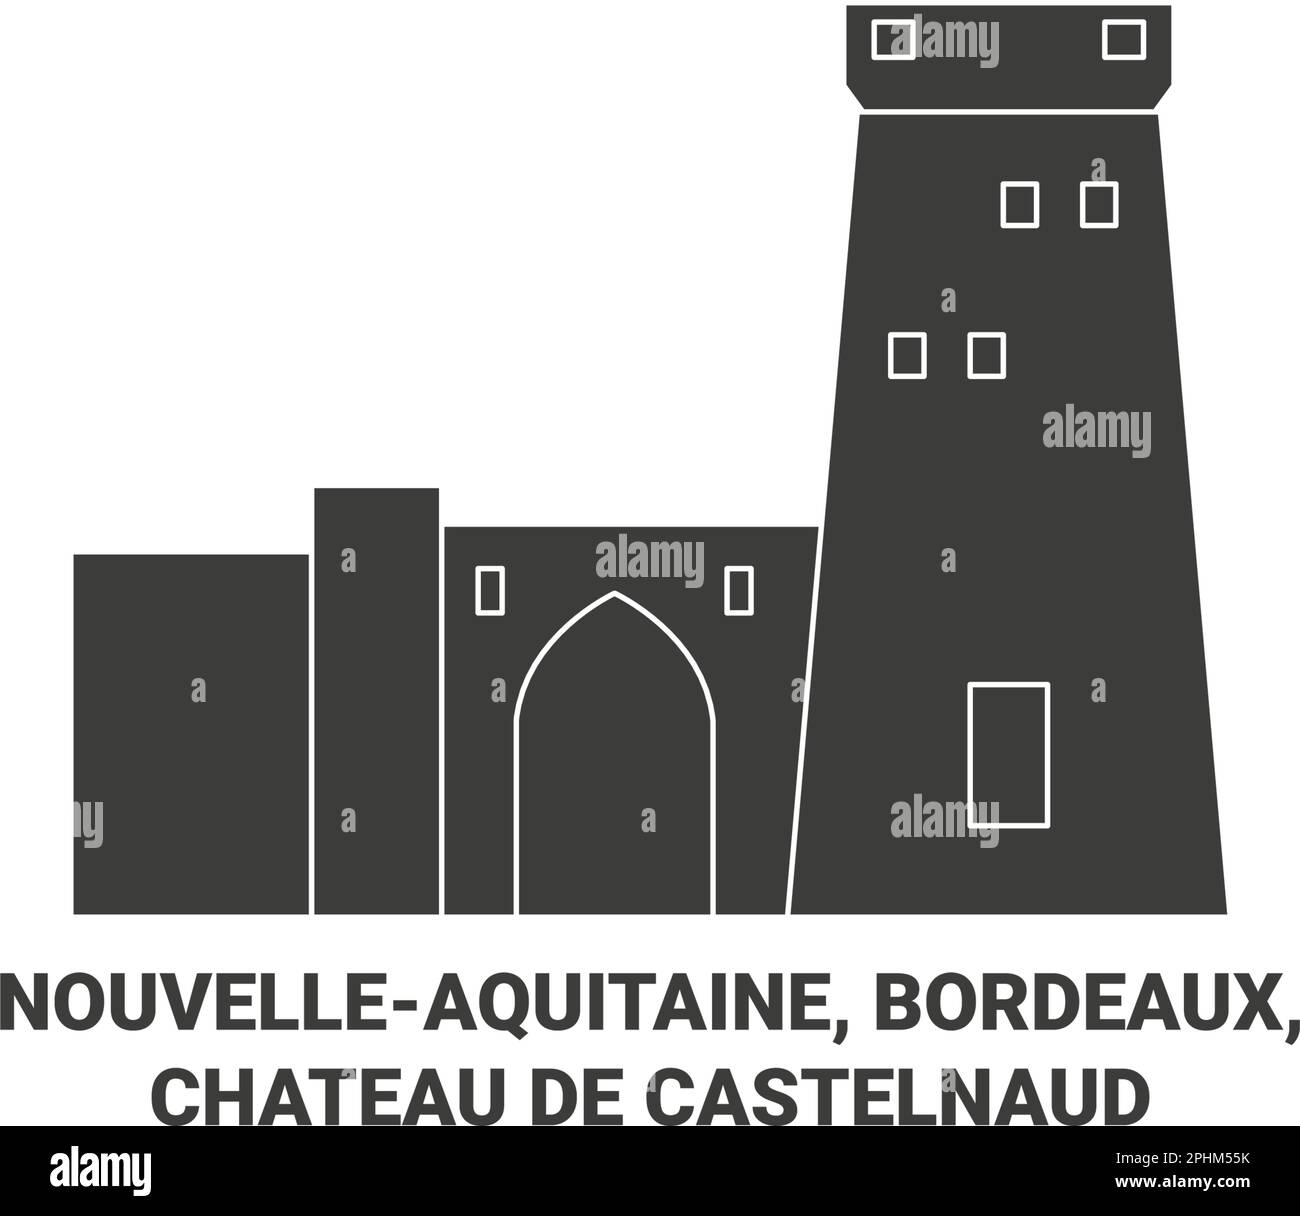 Frankreich, Nouvelleaquitaine, Bordeaux, Chateau De Castelnaud reisen als Vektorbild für Wahrzeichen Stock Vektor